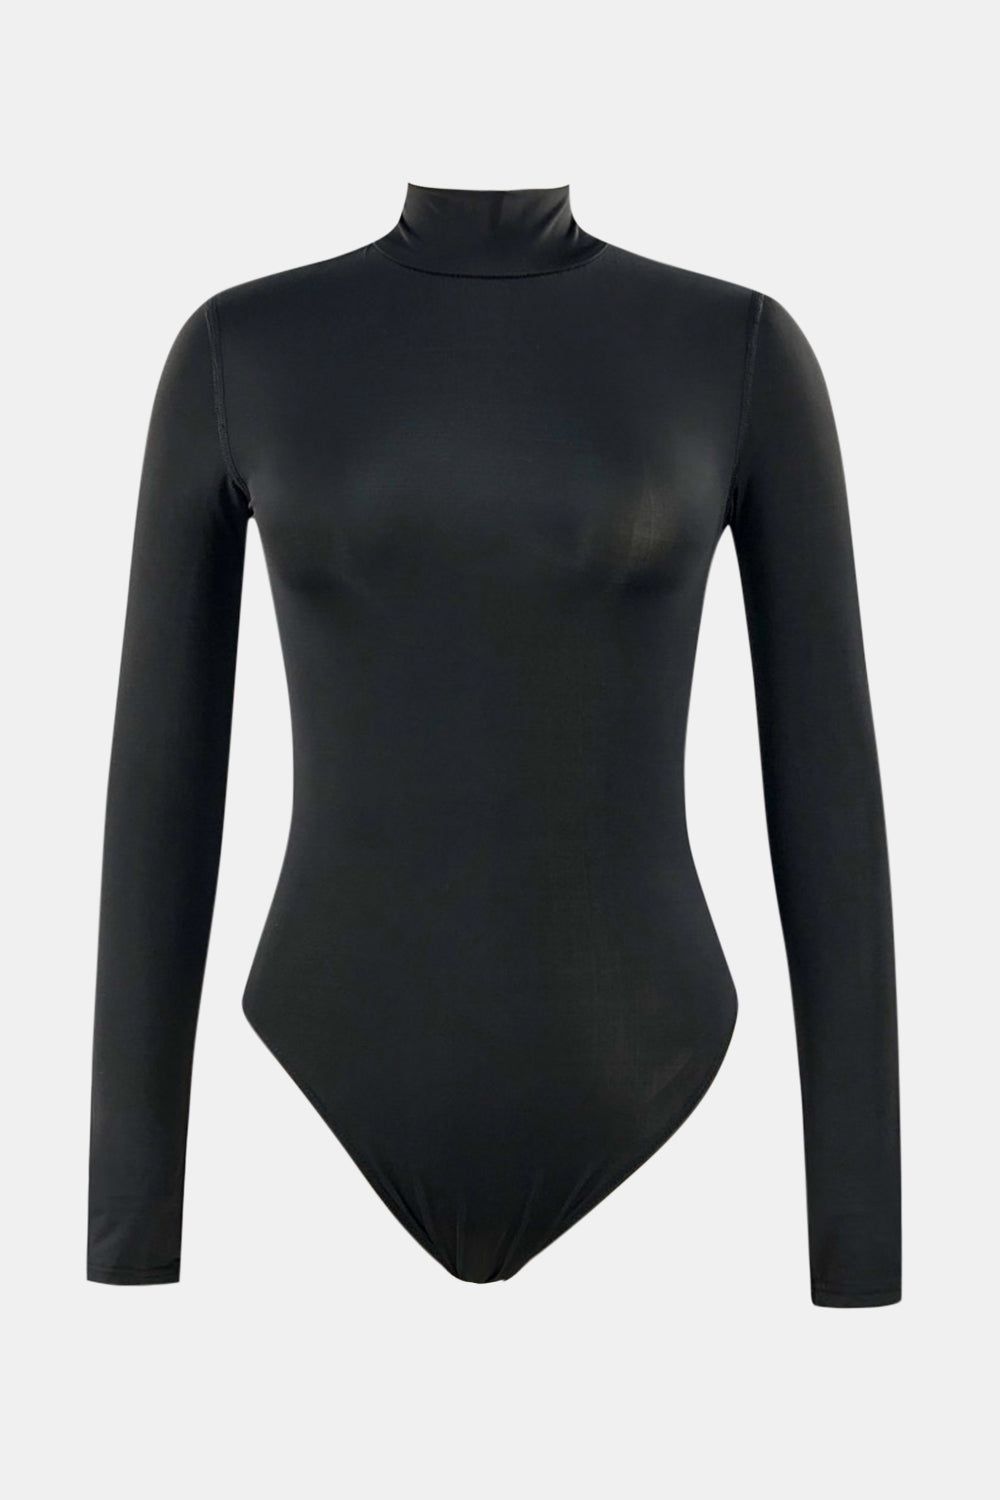 Mock Neck Long Sleeve One-Piece Swimwear in Black